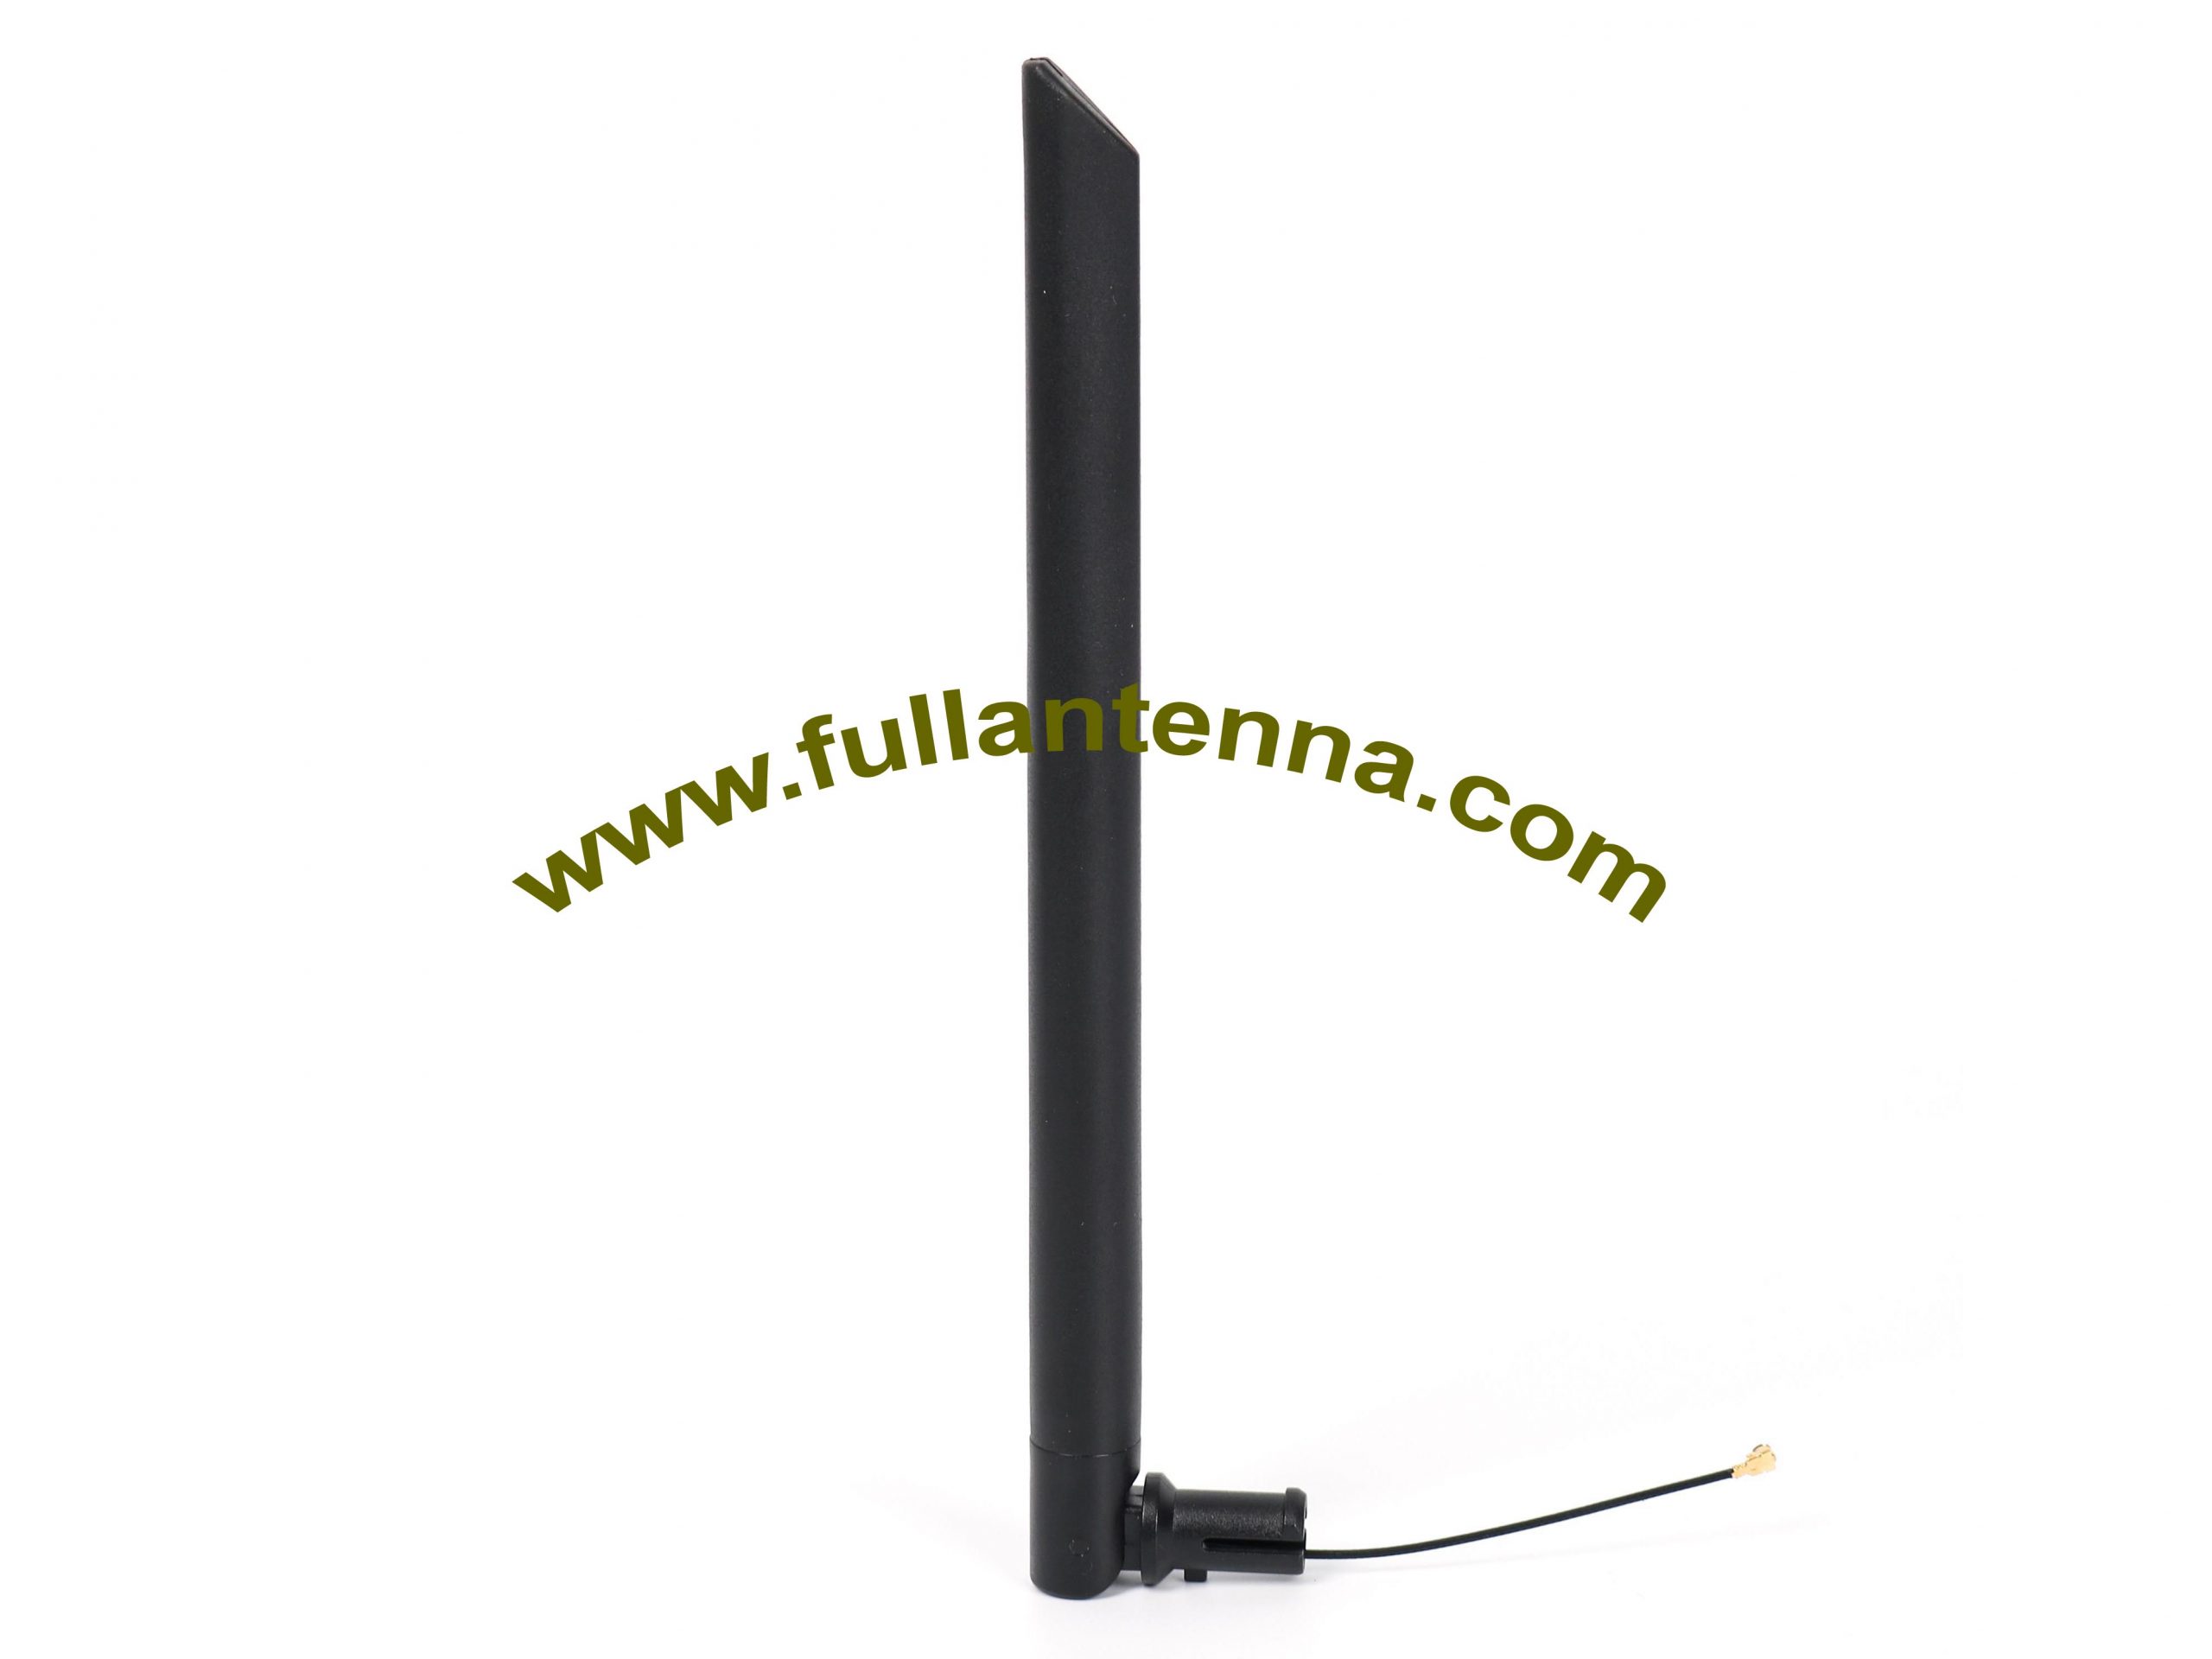 P / N: Antena gumowa FALTE.0204,4G / LTE, antena 4g z kablem zysk IPEX lub U.FL 5dBi